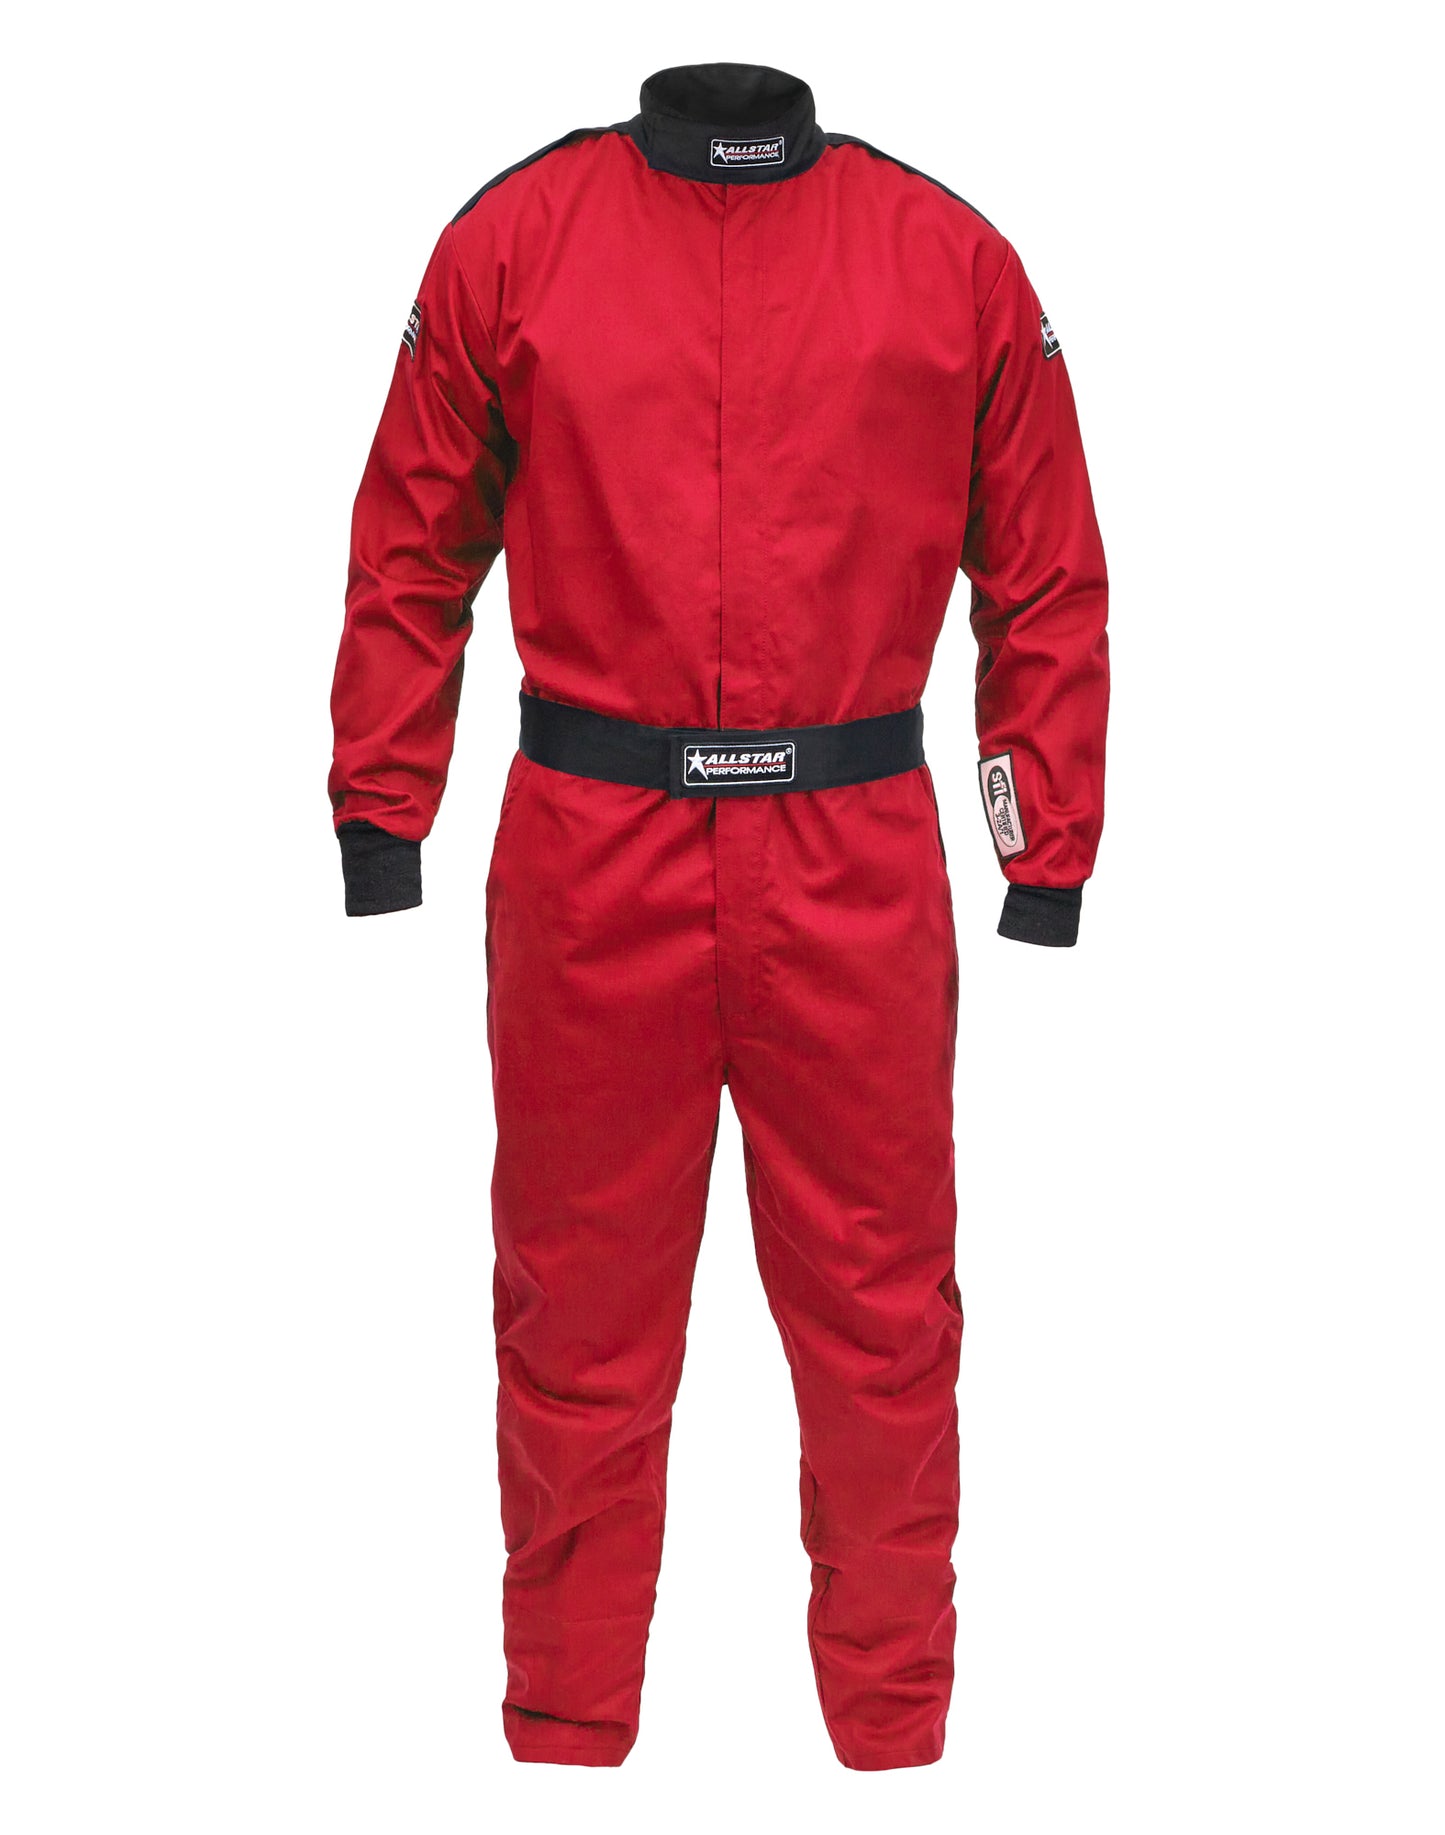 Racing Suit SFI 3.2A/1 S/L Red Medium